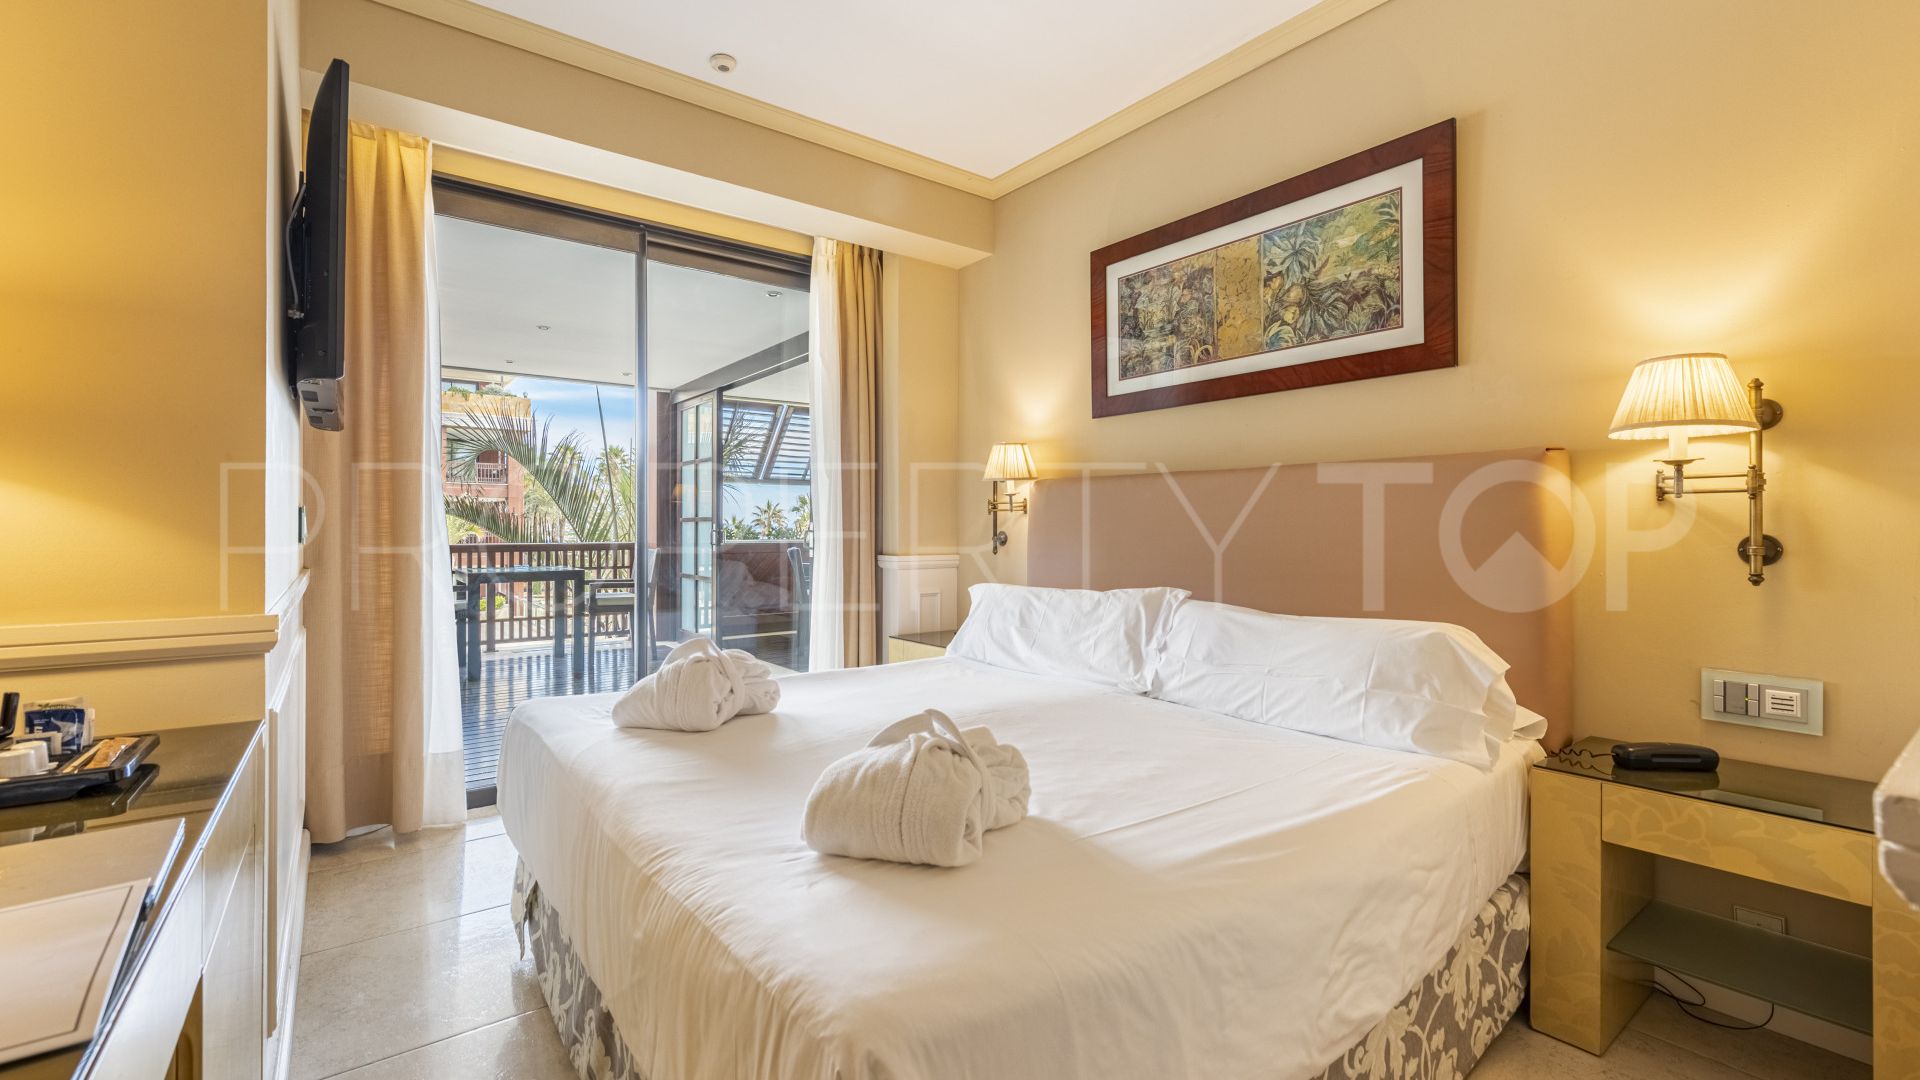 For sale apartment in Guadalpin Banus